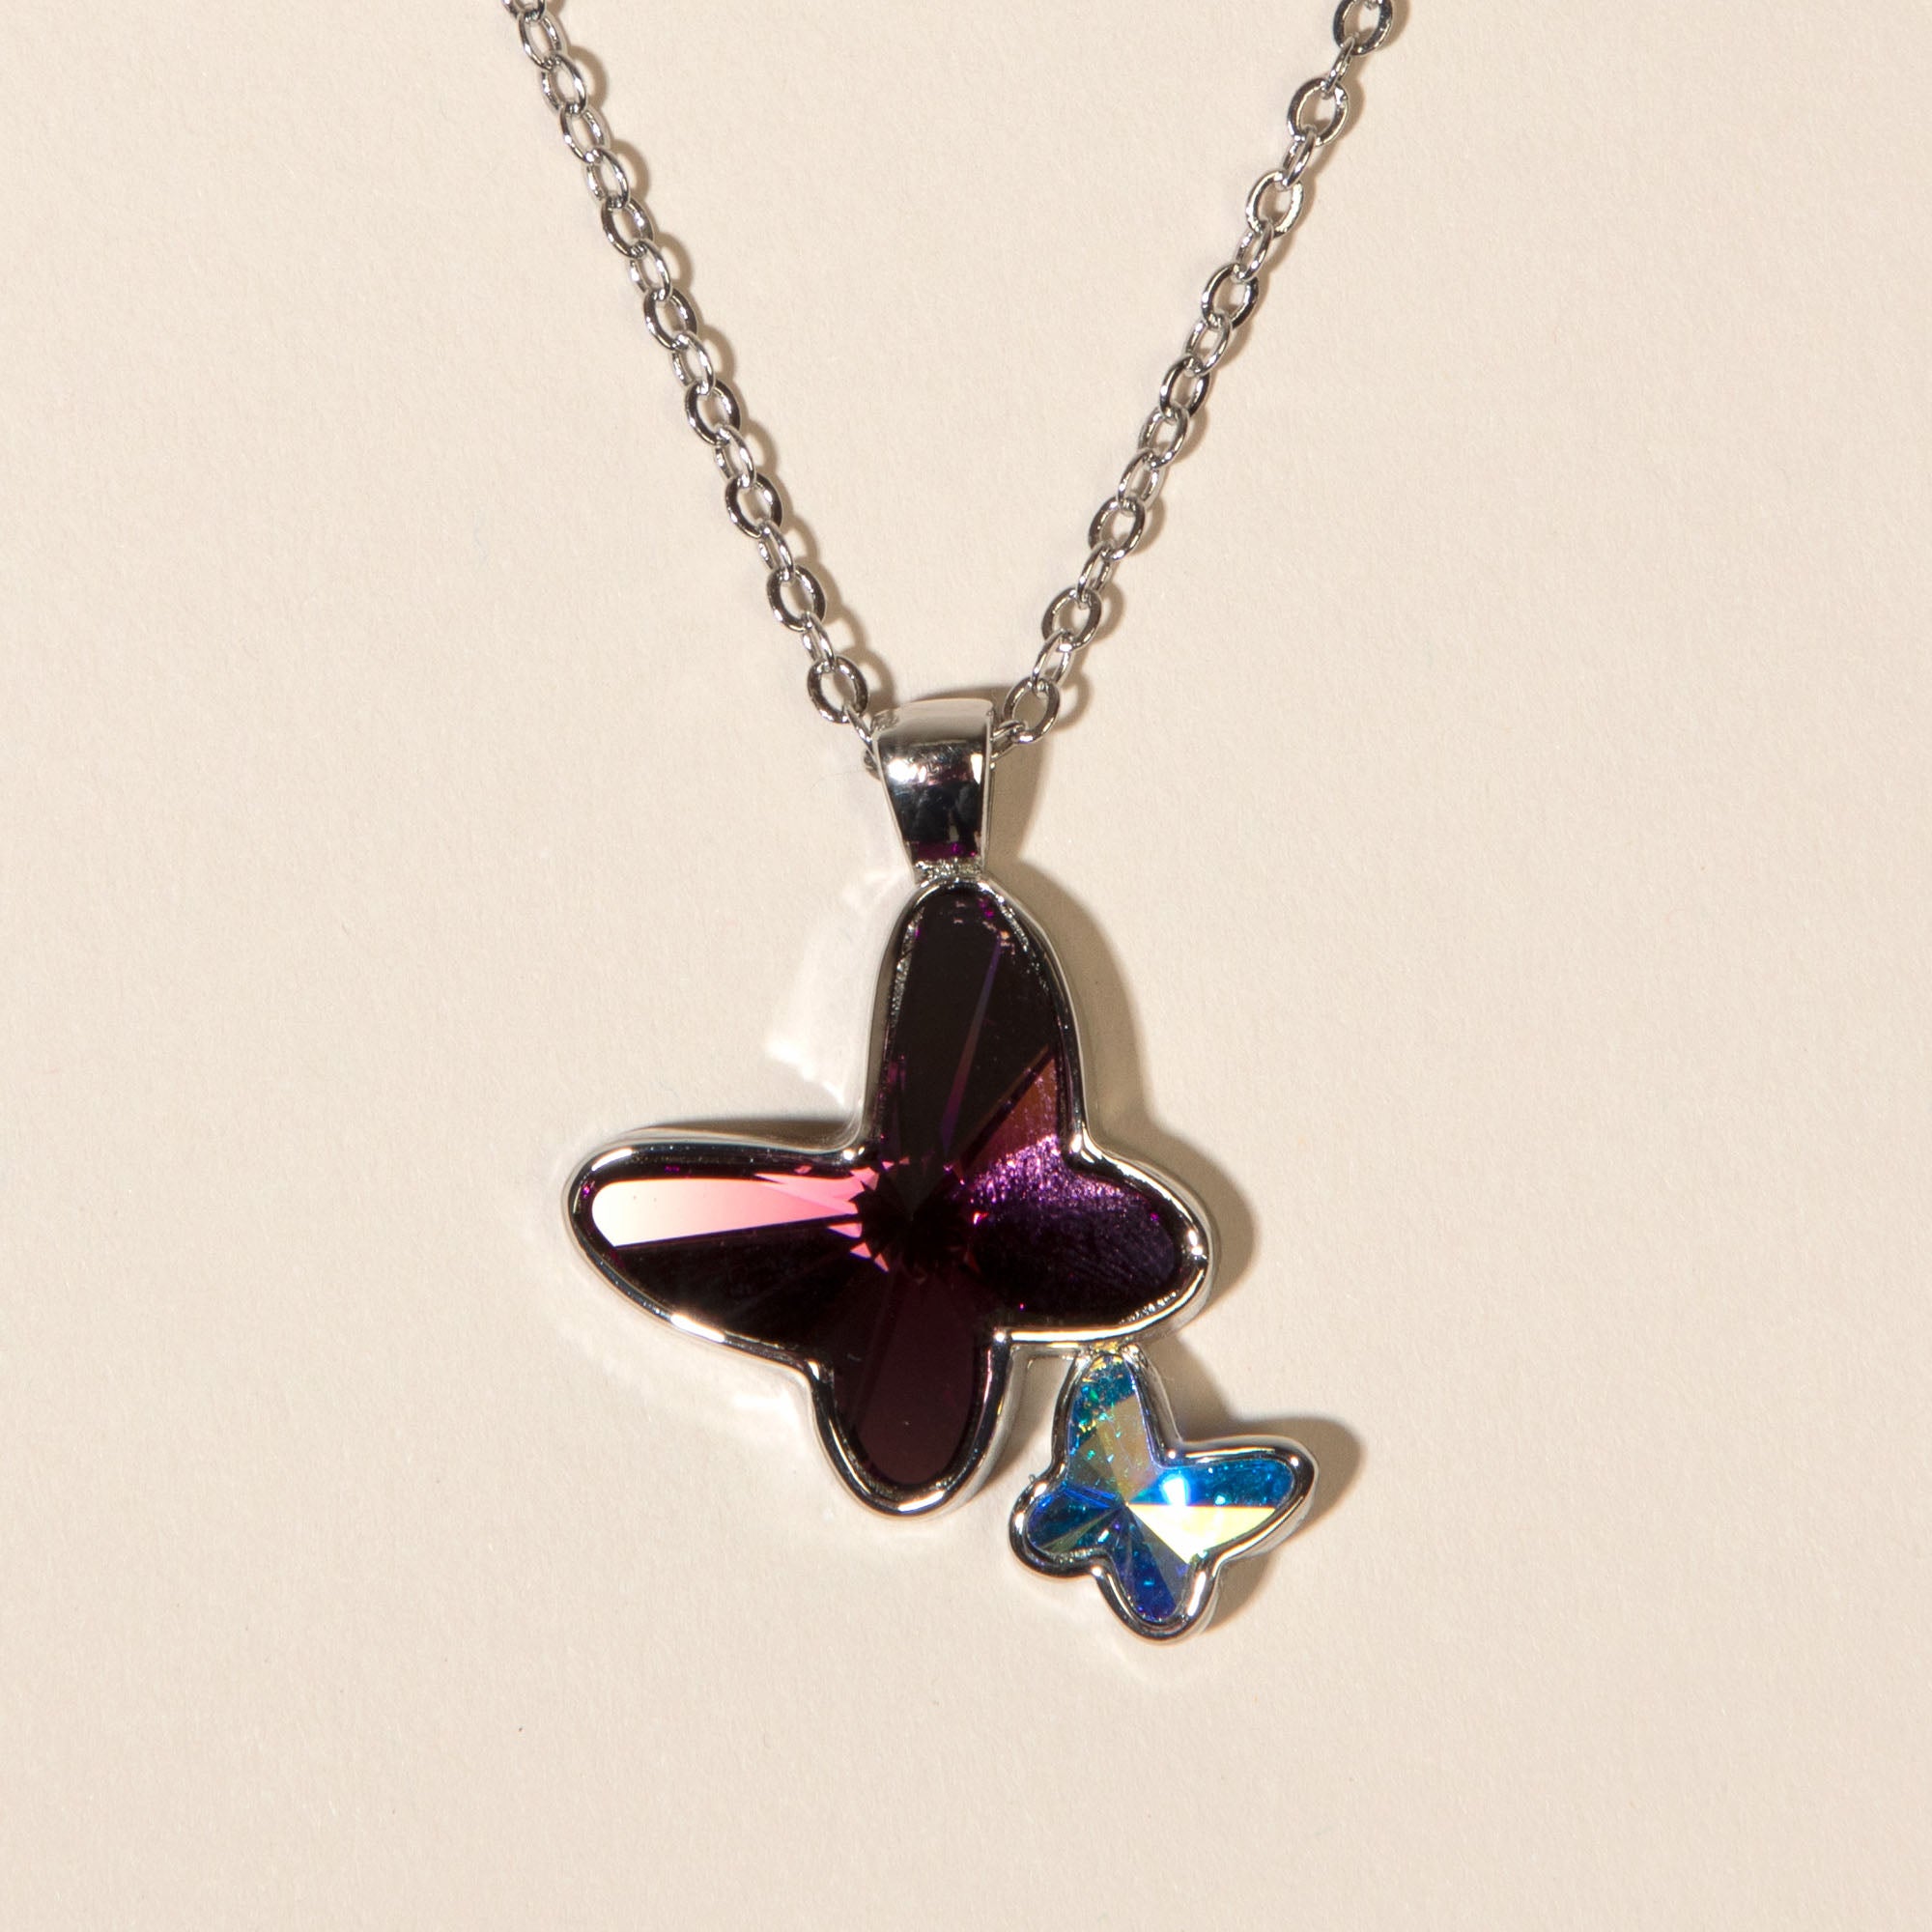 Swarovski Crystal Butterfly Necklace - Amethyst